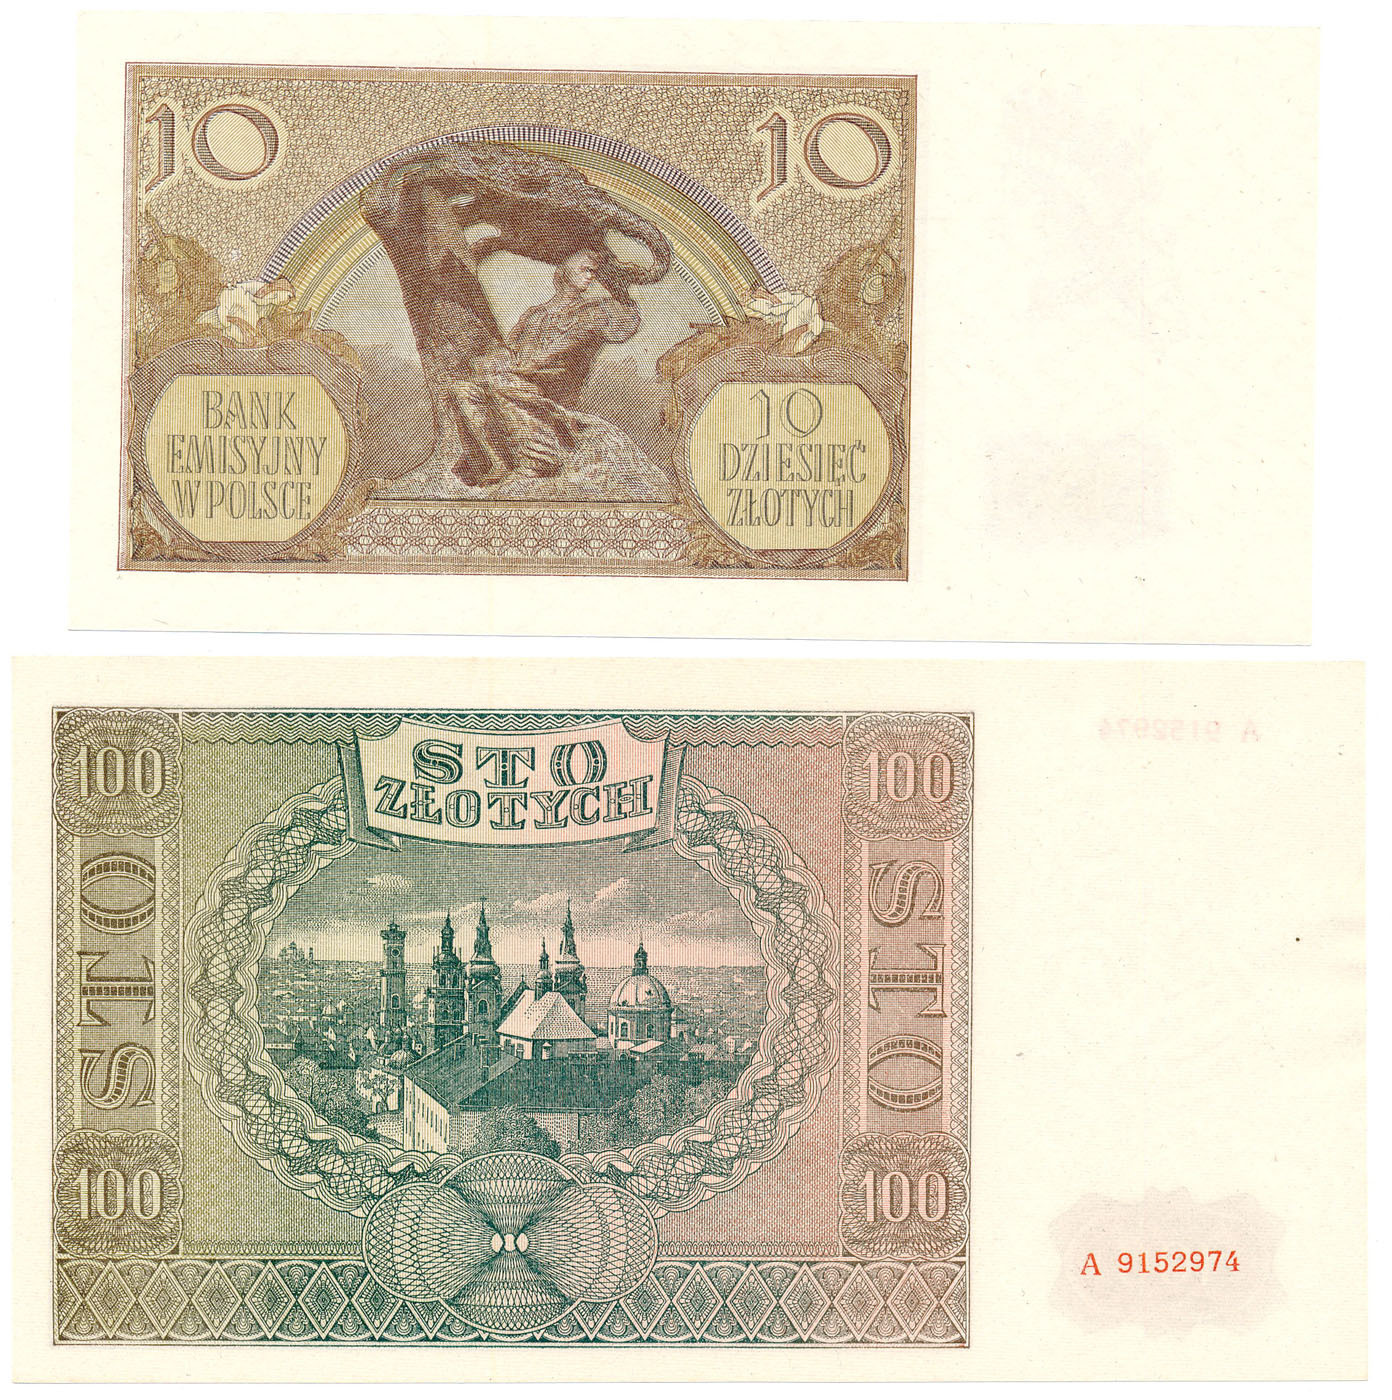 10 złotych 1940 seria L, 100 złotych 1941 seria A